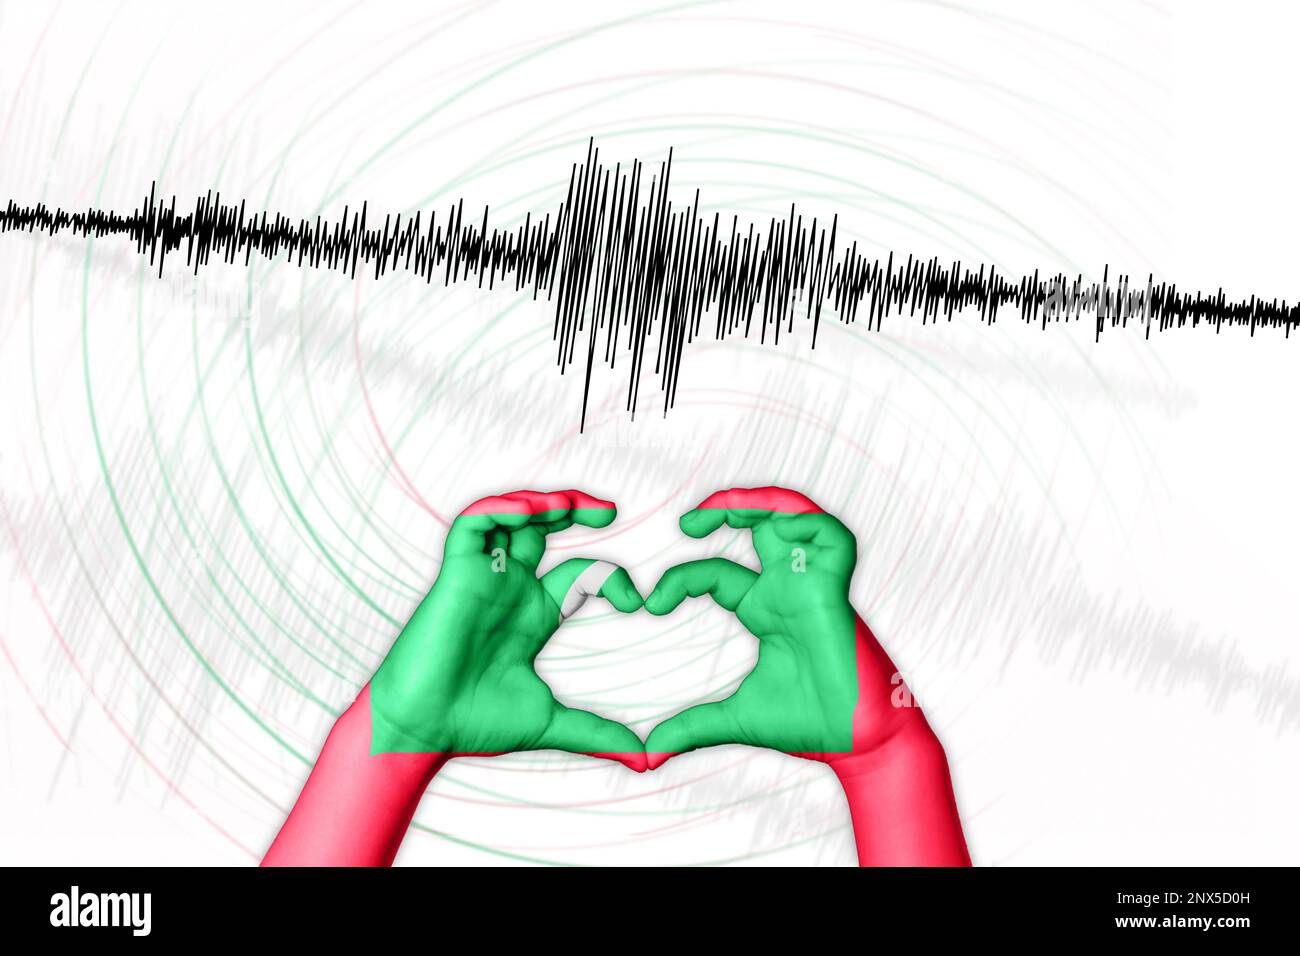 Seismische Aktivität Erdbeben Malediven Symbol der Heart Richter Scale Stockfoto